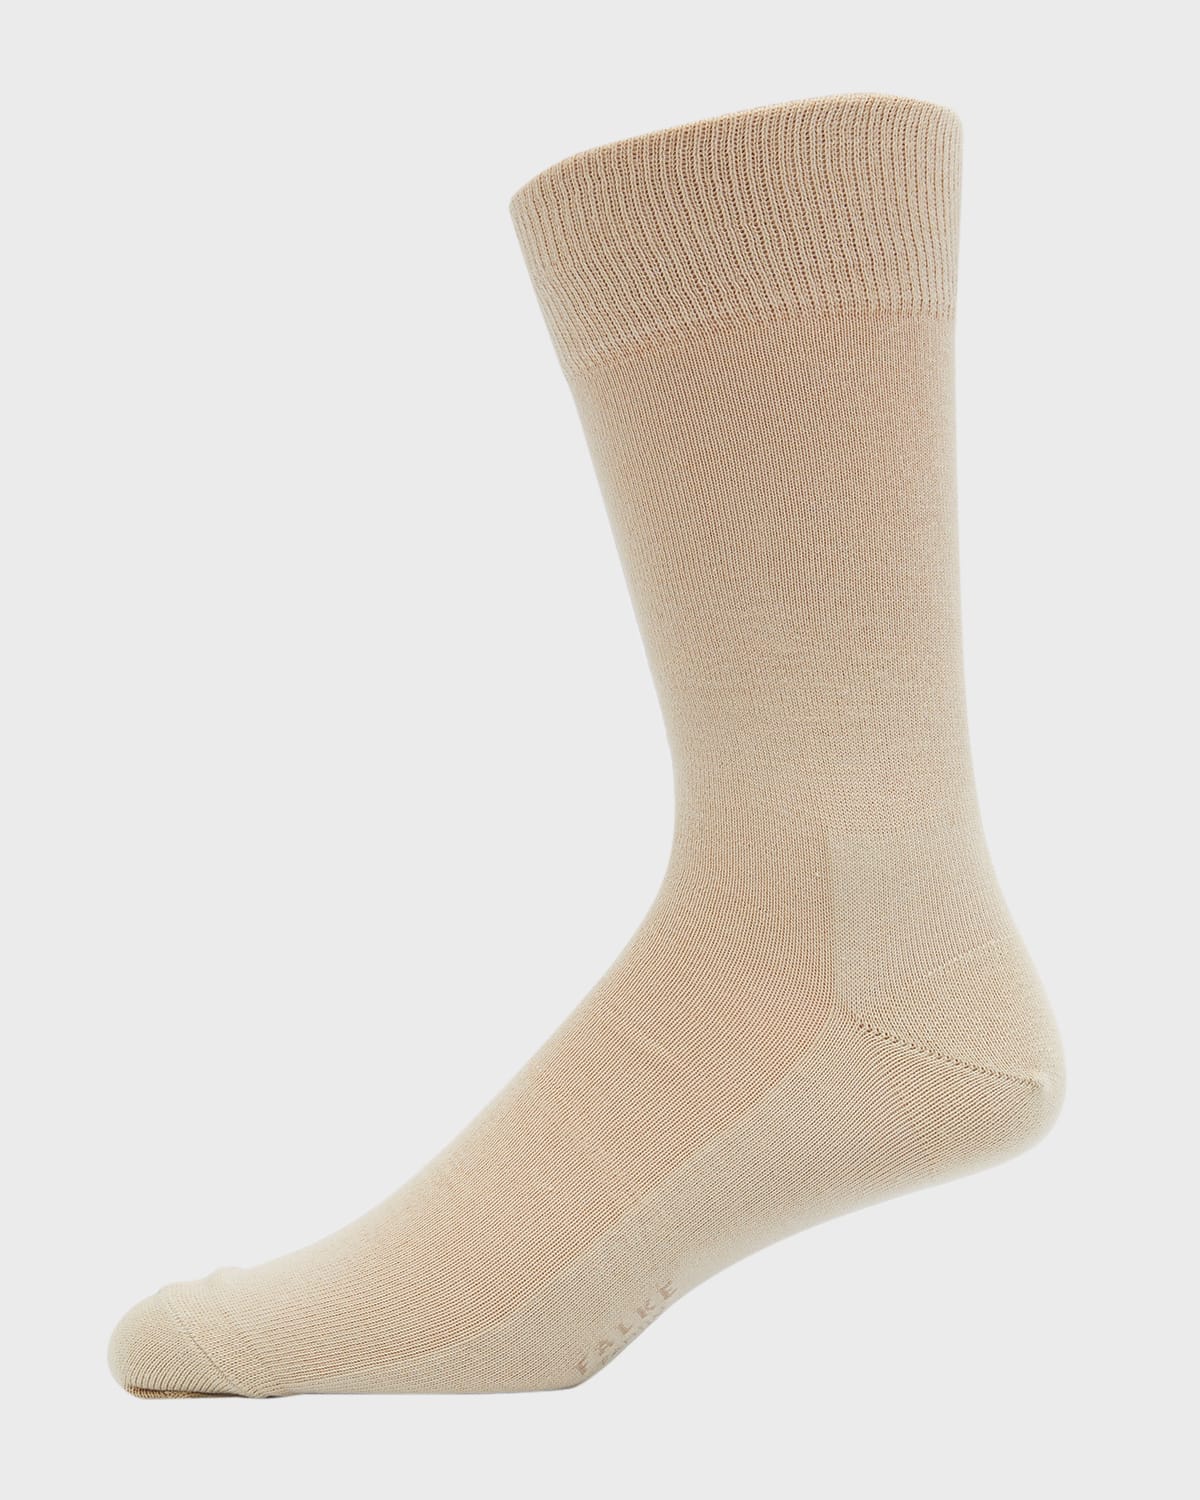 Falke Men's Family Cotton Mid-Calf Socks